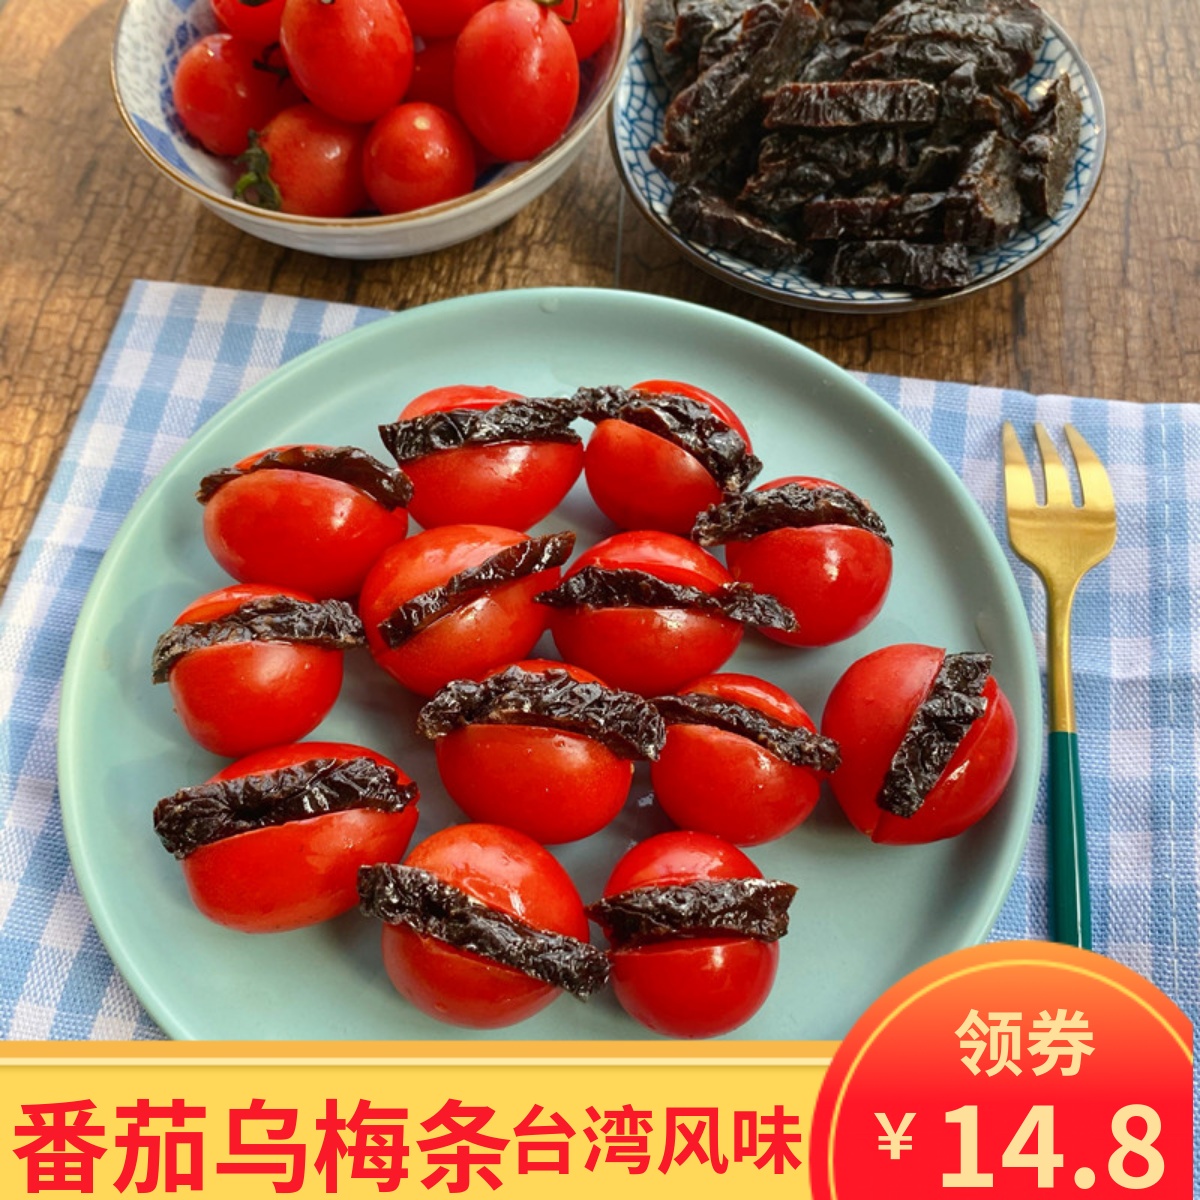 果脯夹水果零食 梅干条500g酸甜无核 台湾特产 番茄乌梅条 魏食